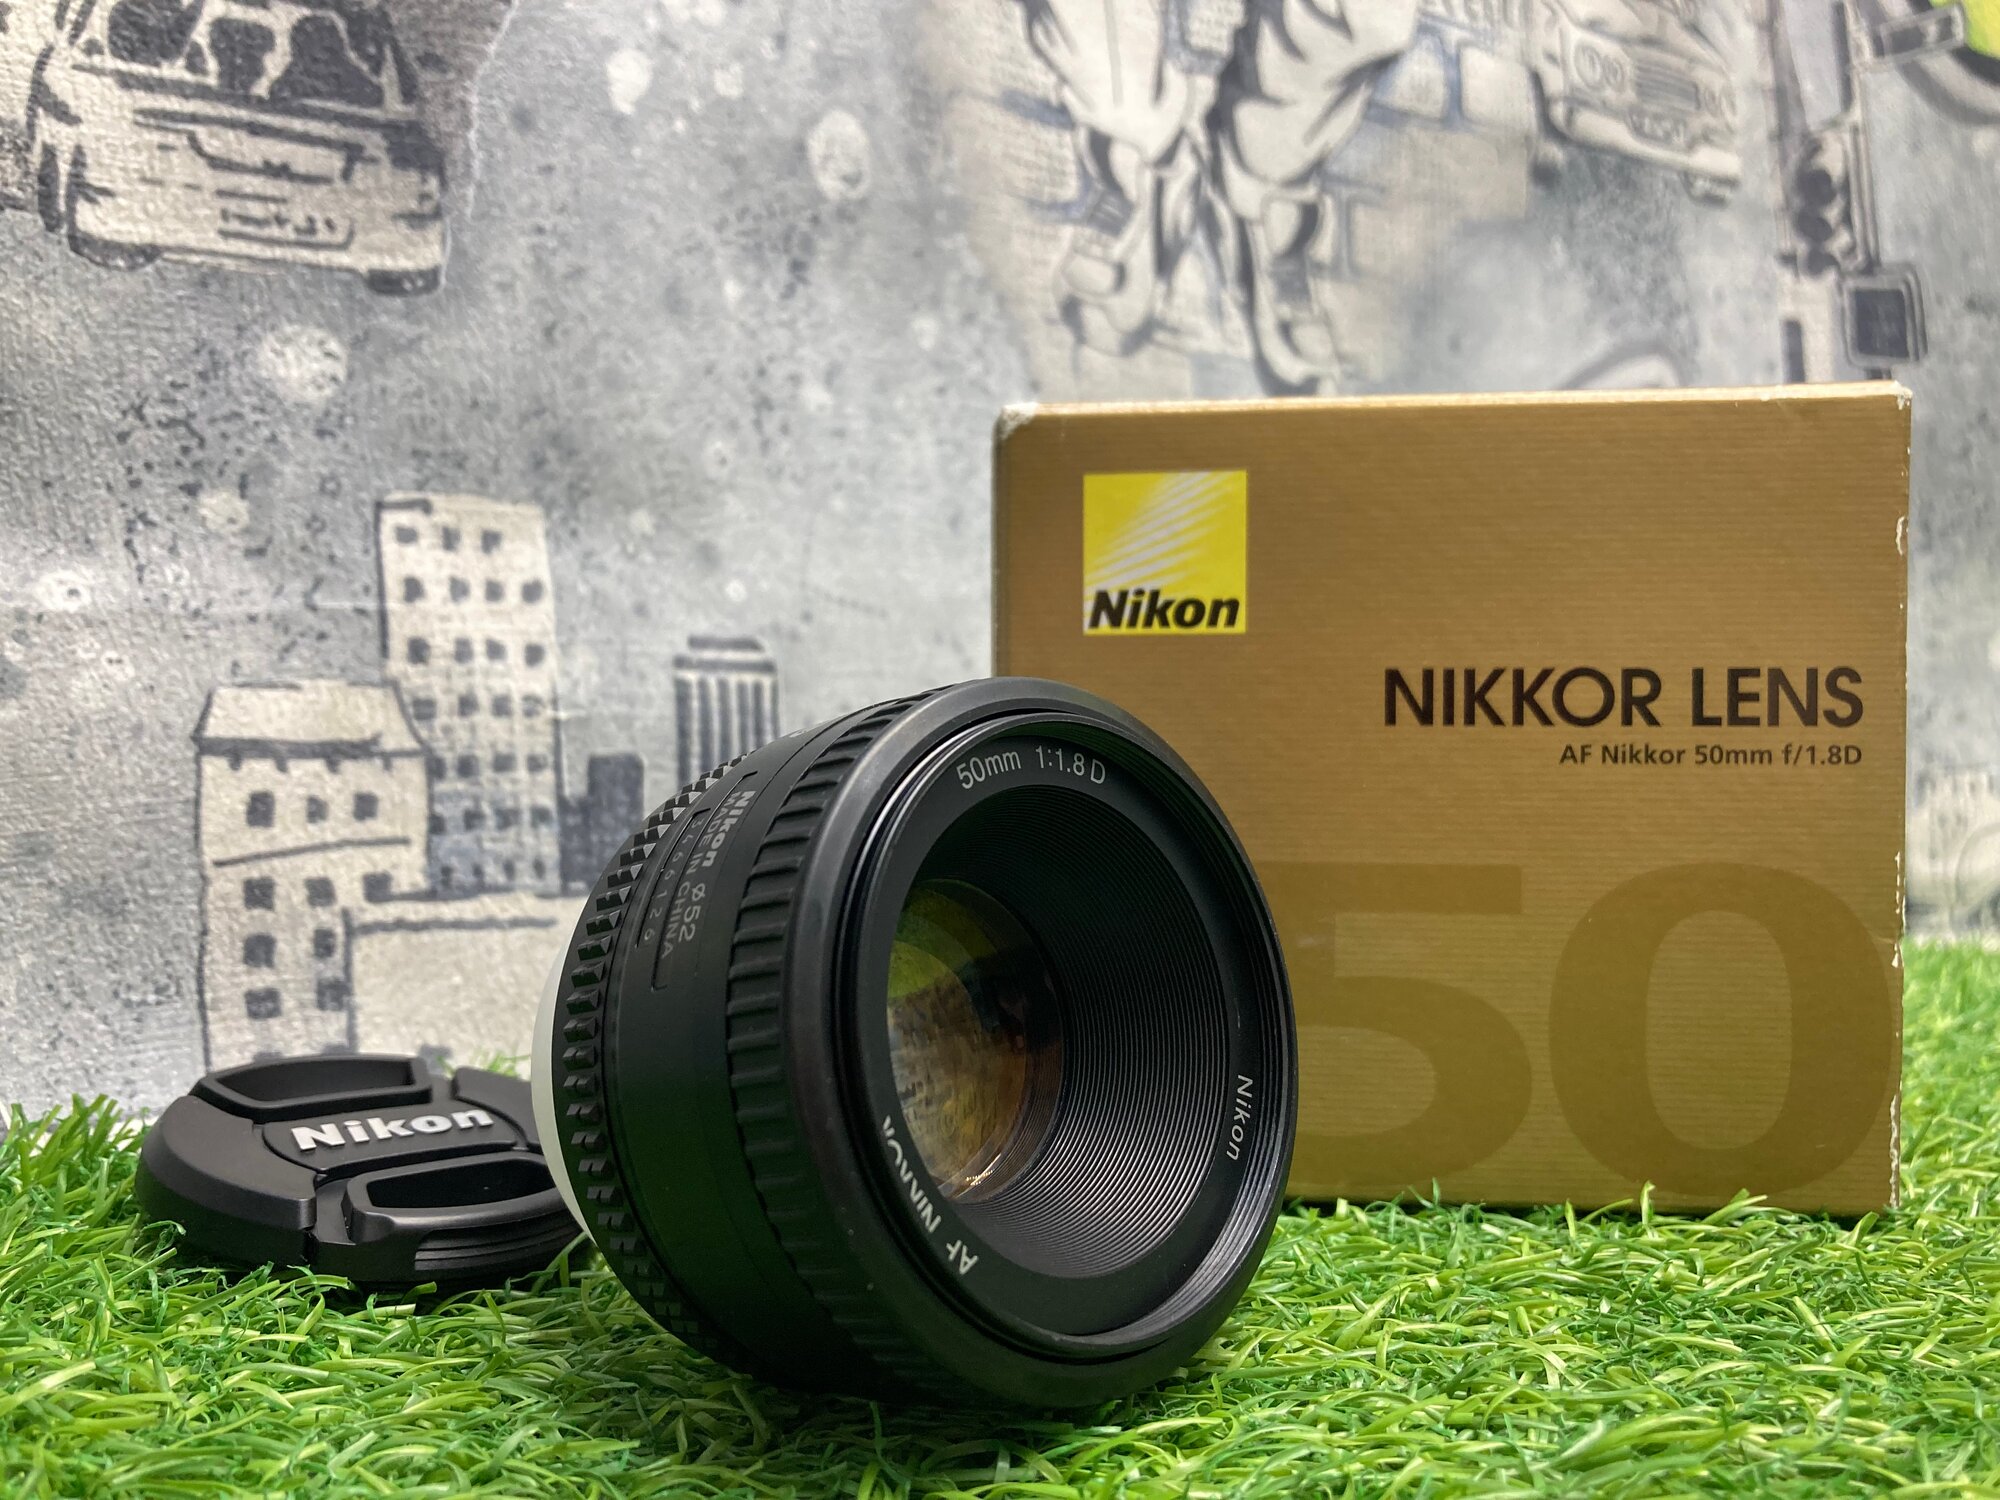 Nikon 50mm 1.8D AF Nikkor